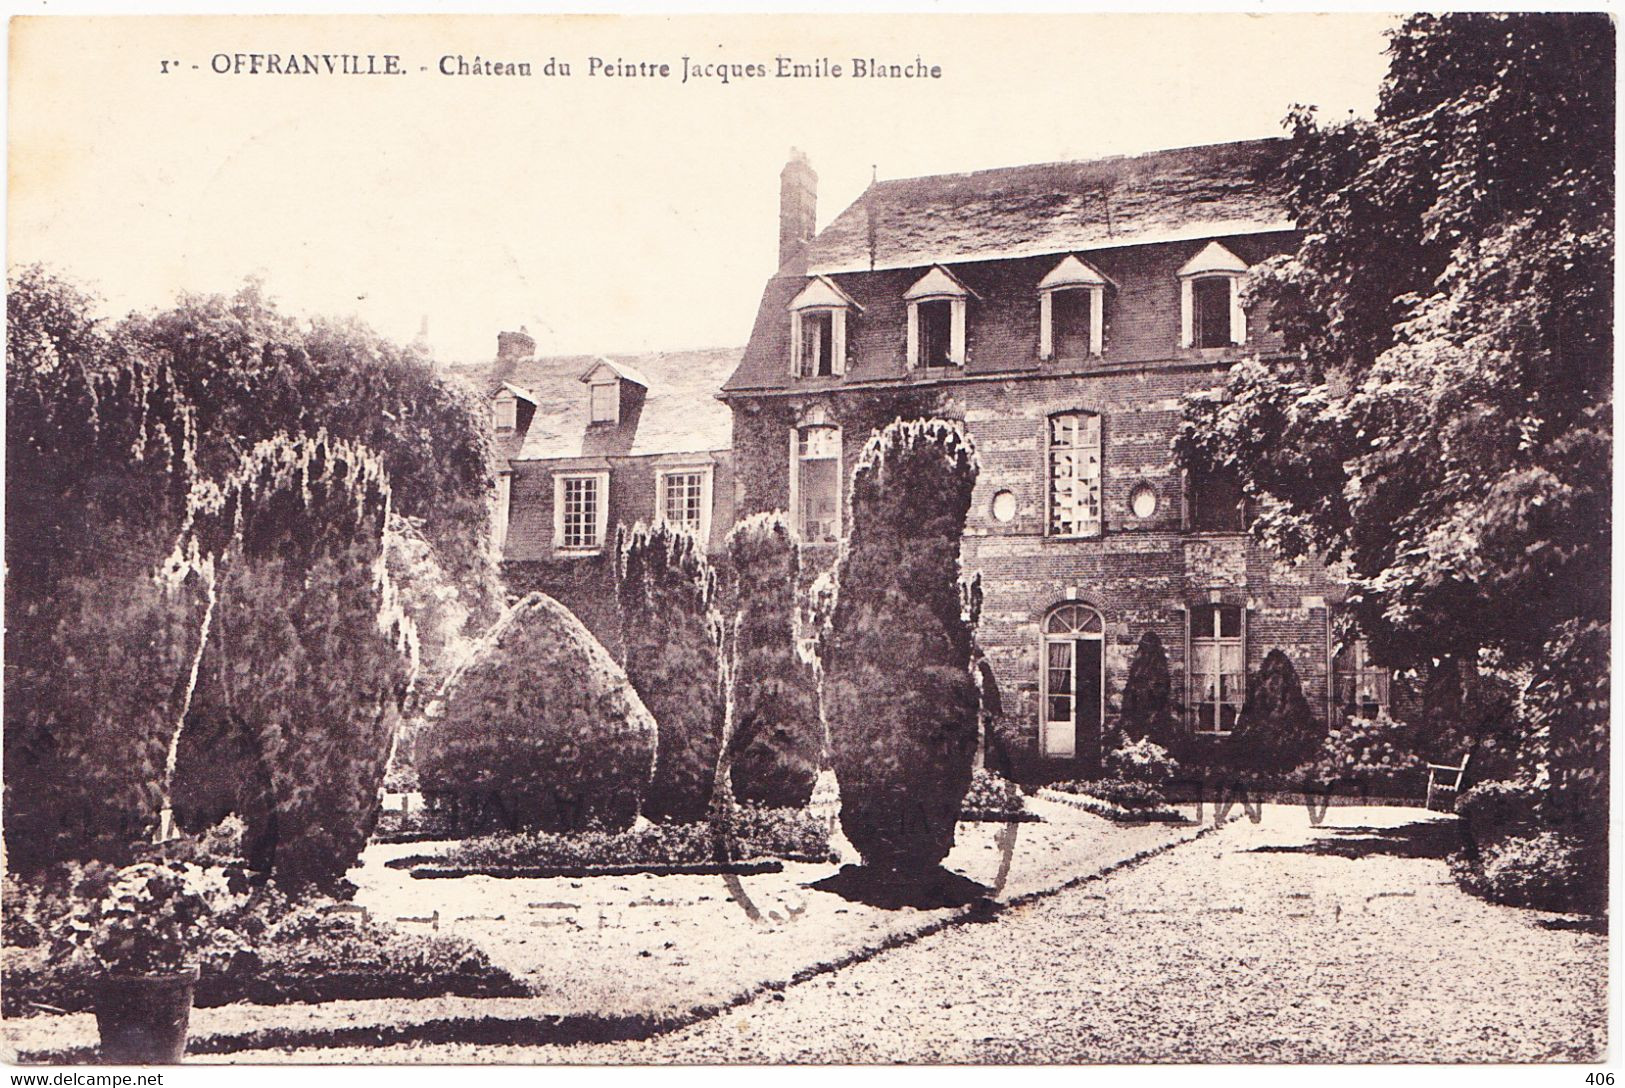 Château Du Peintre Jacques Emile Blanche - Offranville